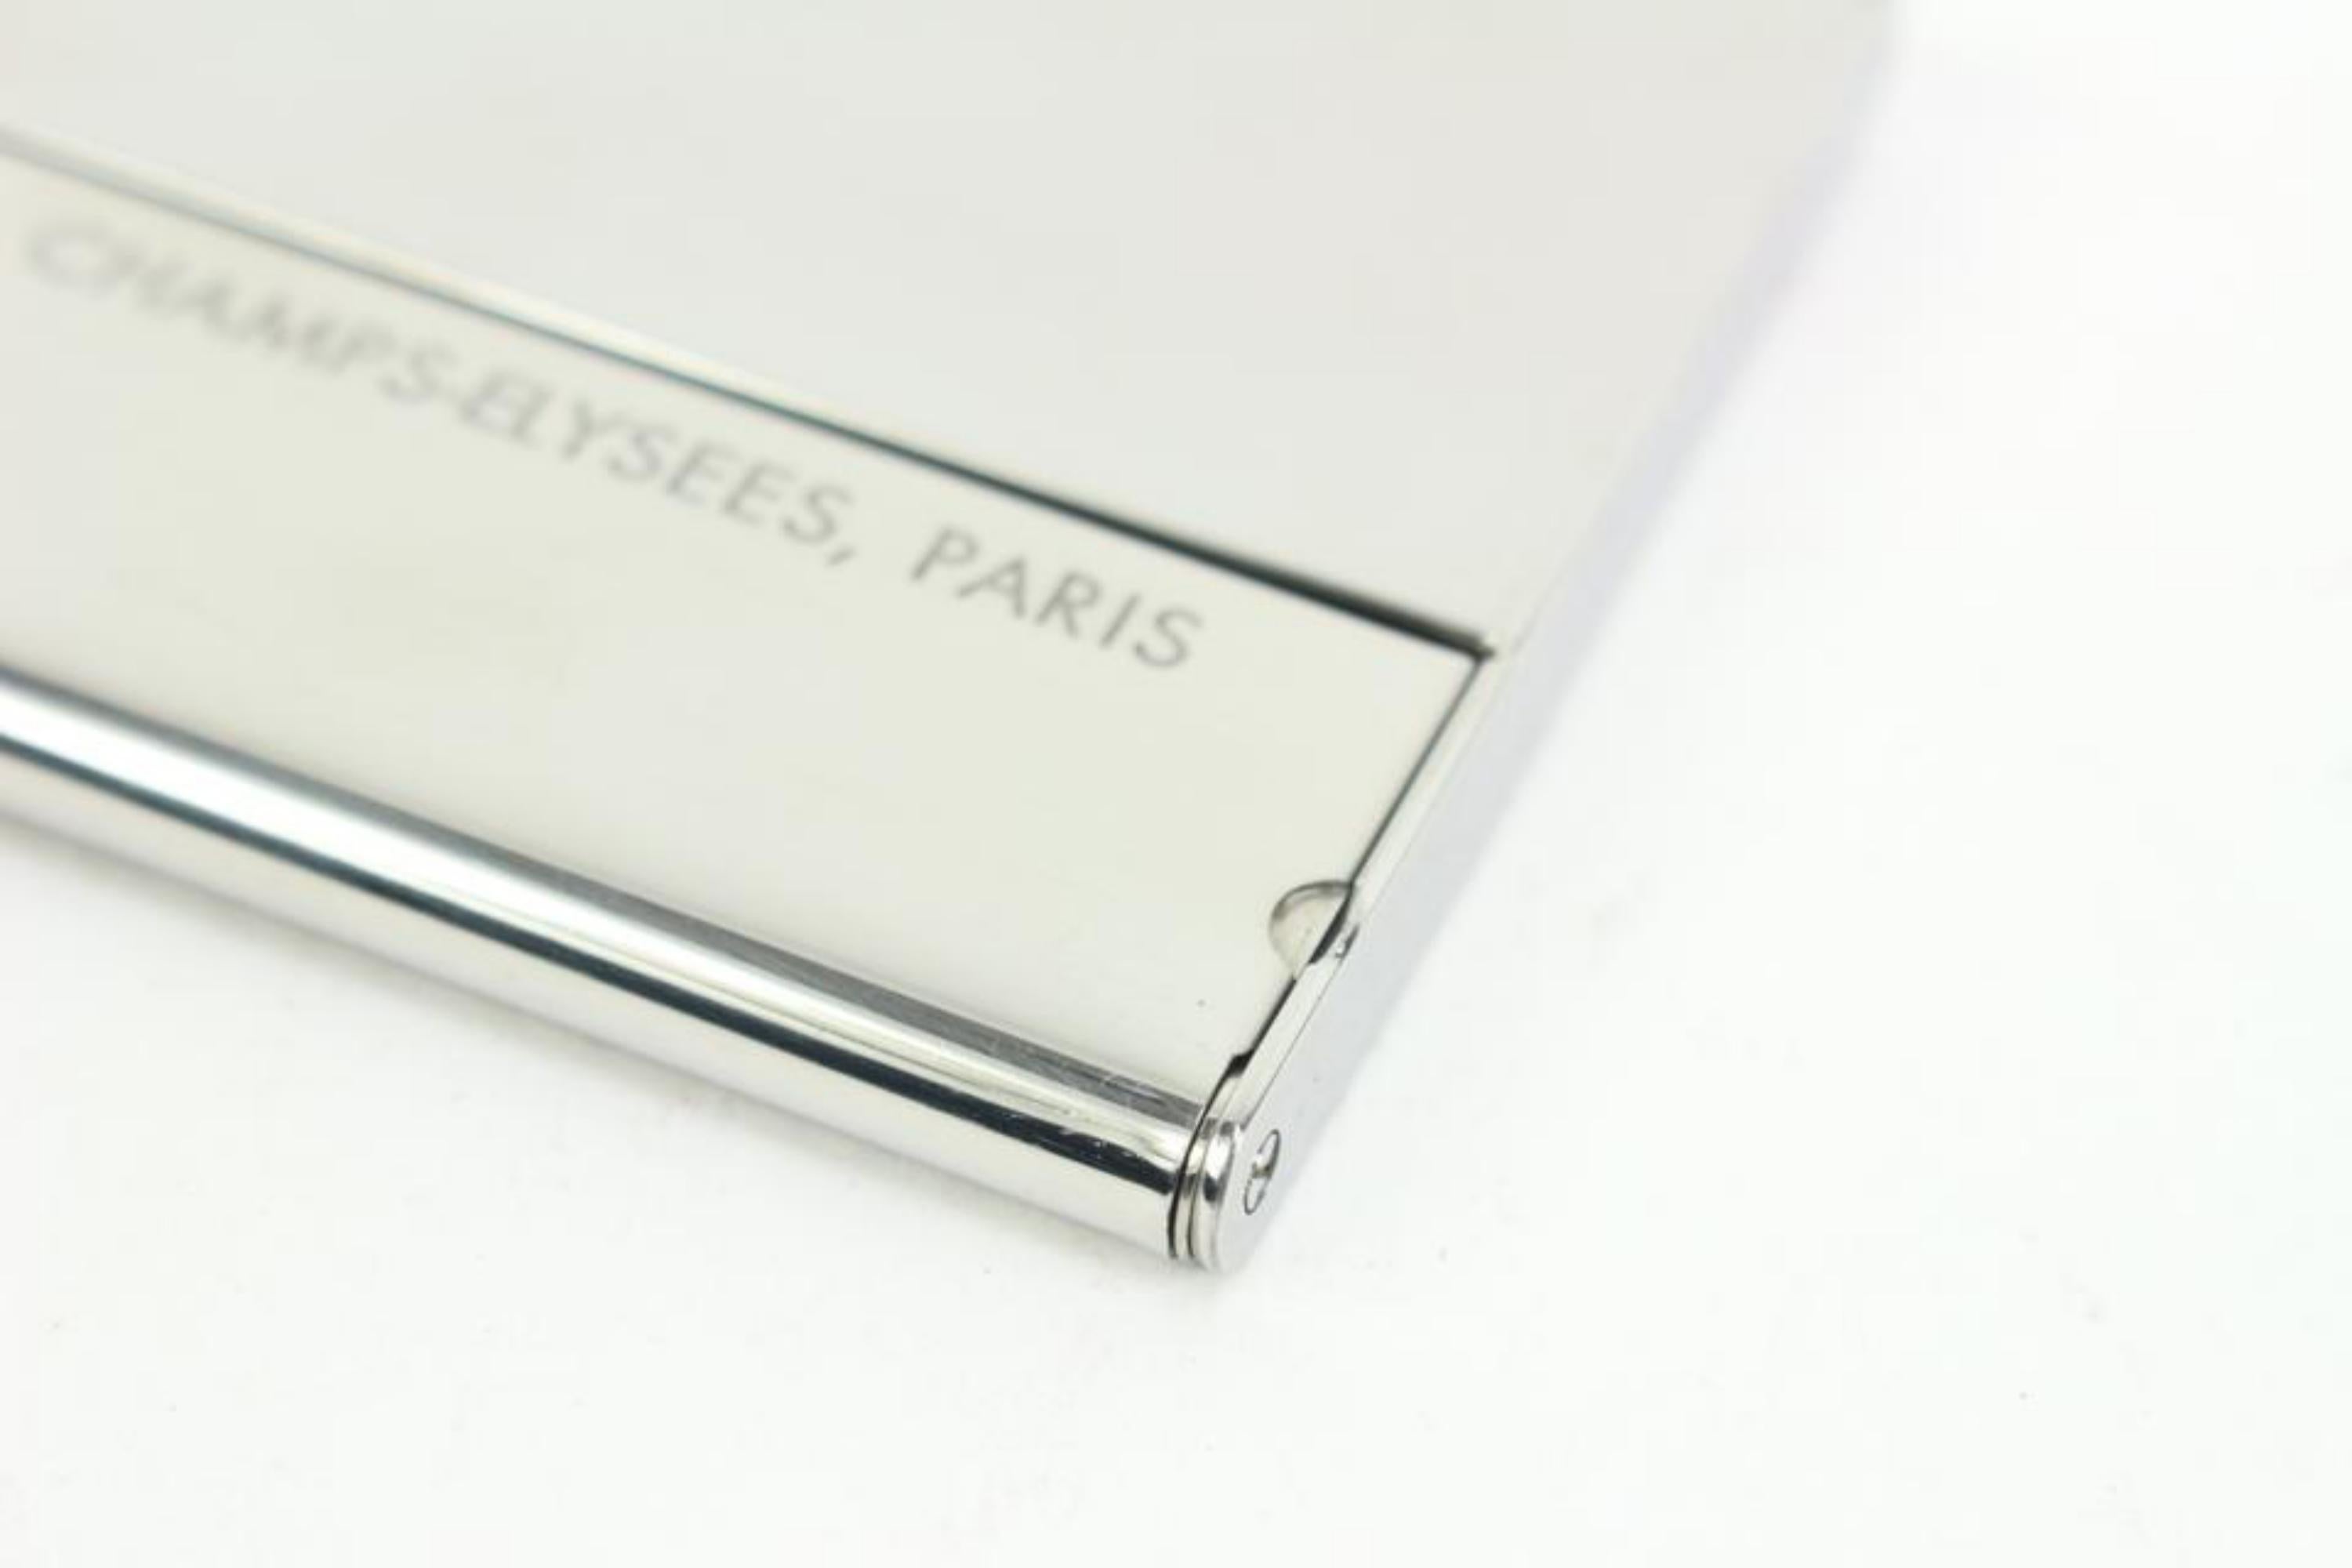 Louis Vuitton Porte Carte Champs Elysees Business Card Holder 41lk64 1